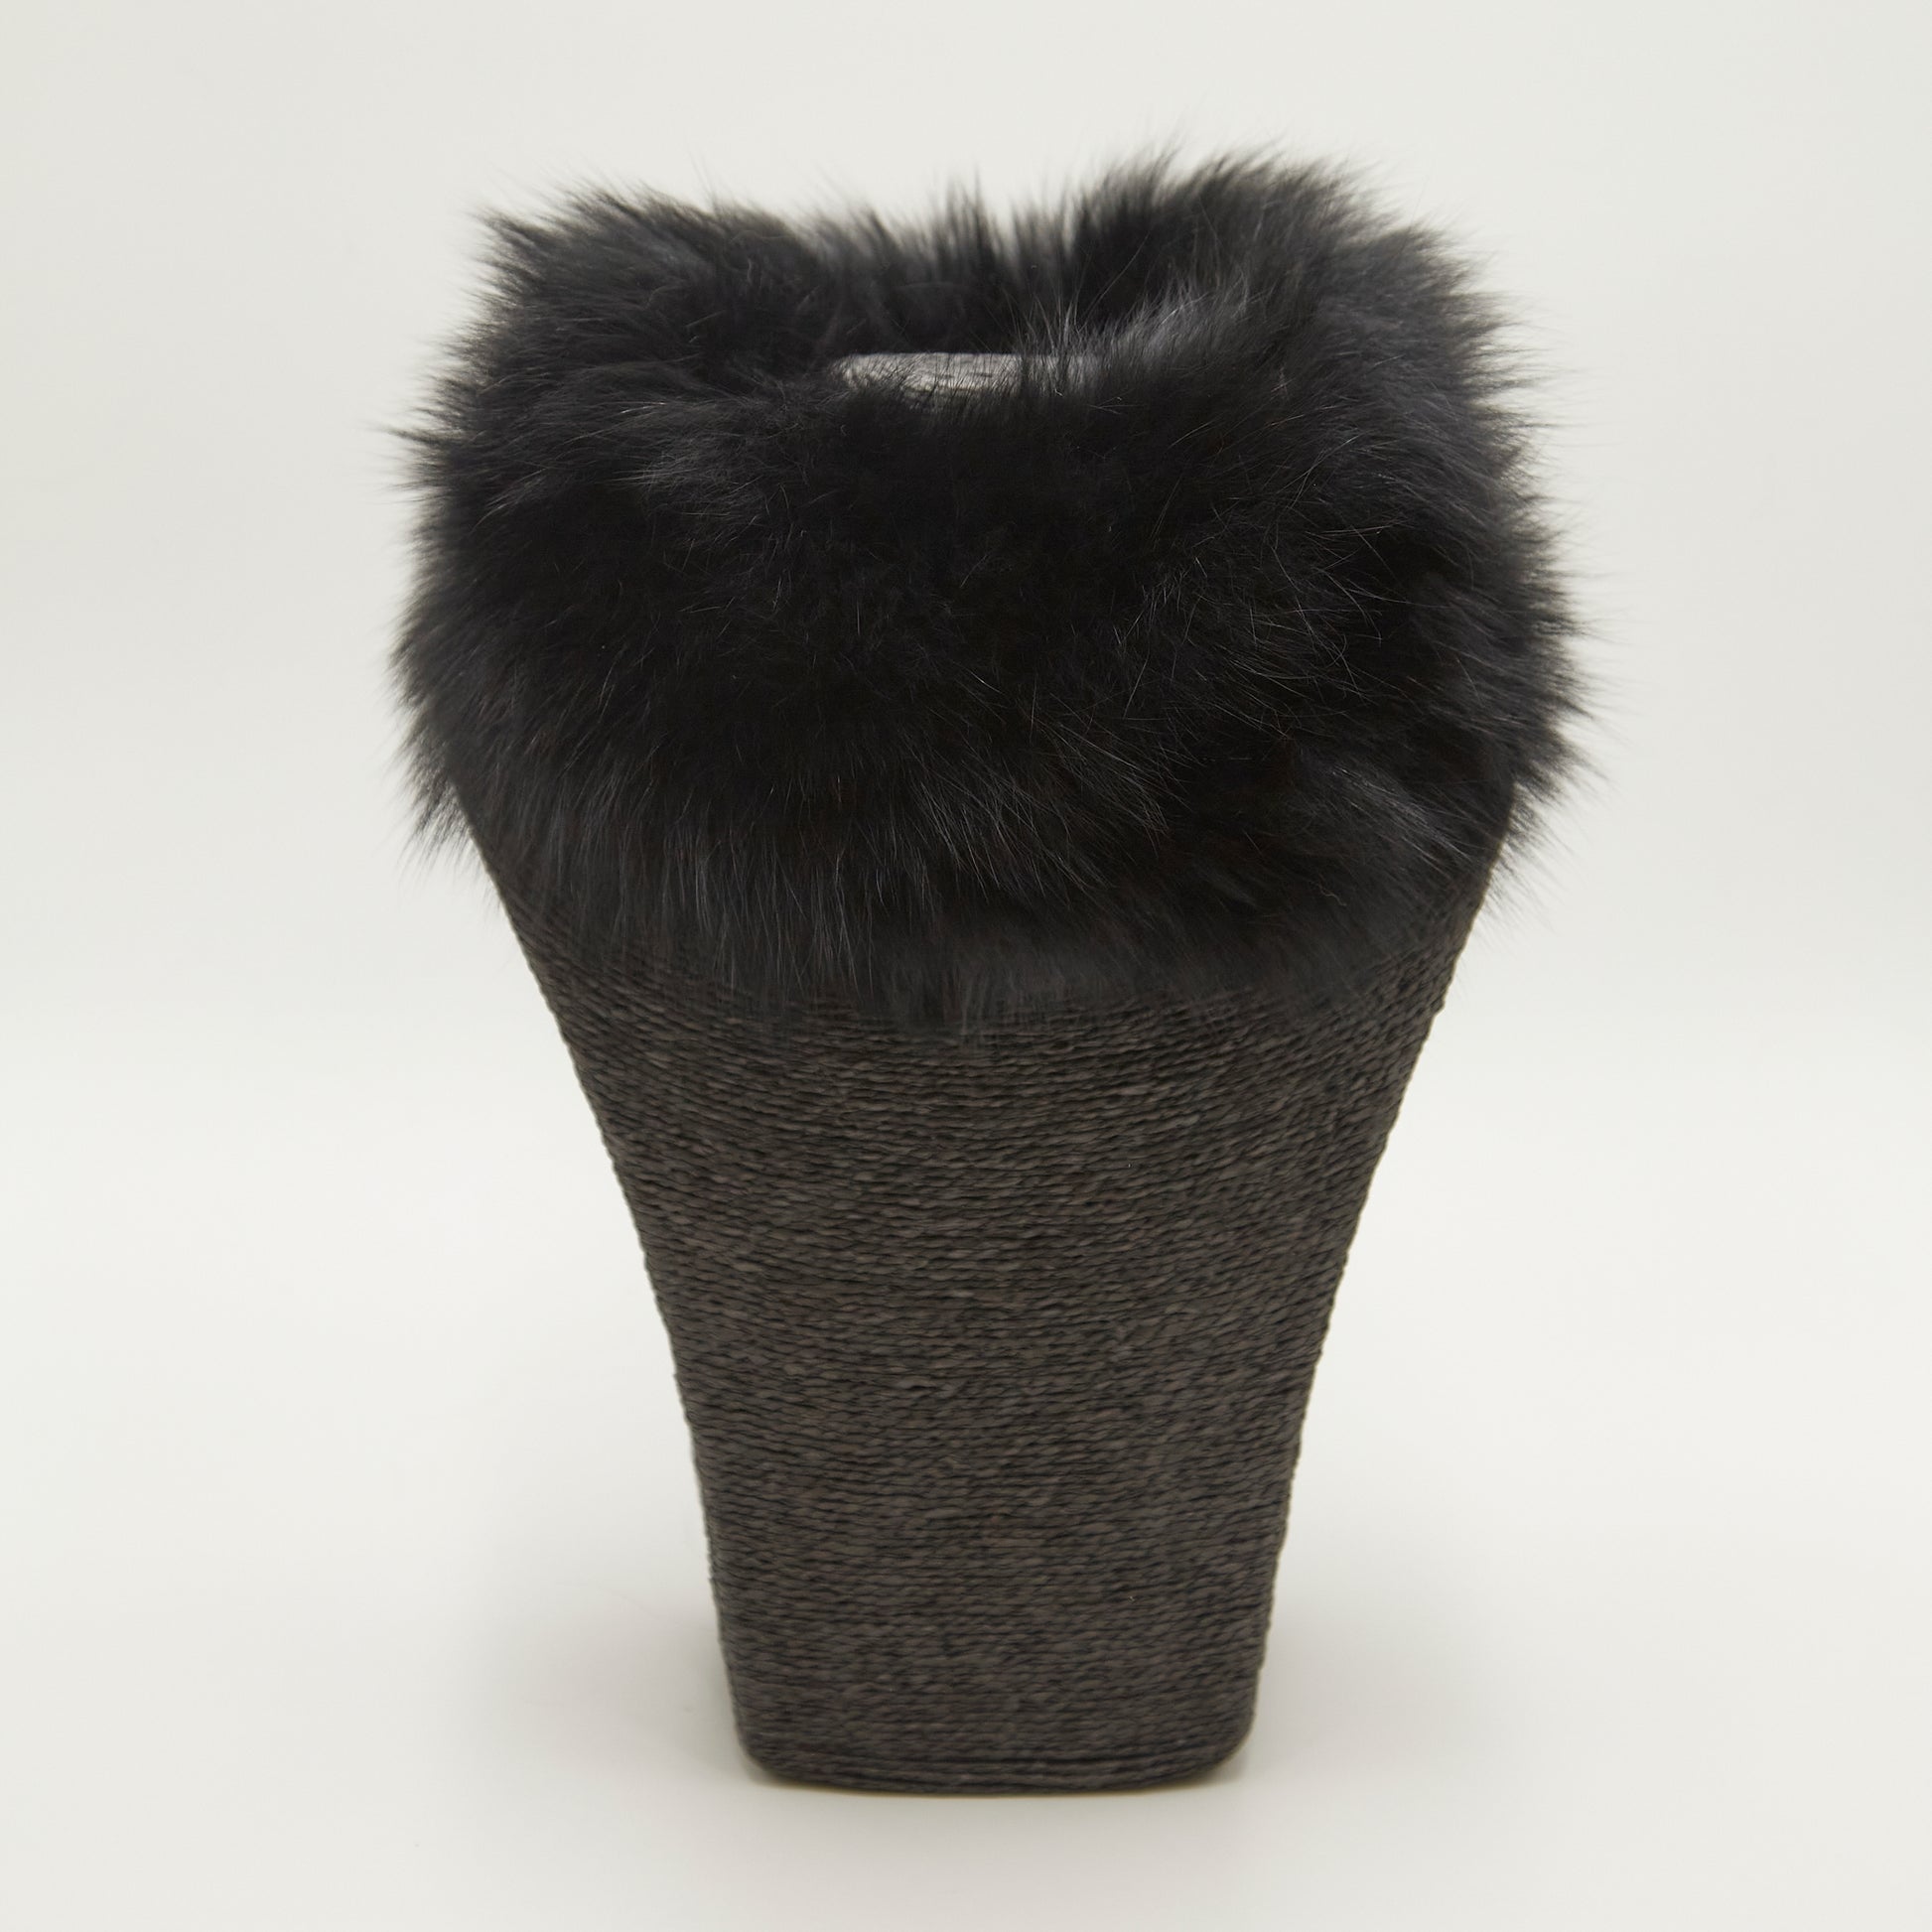 Echarpe piel de zorro negro – Bufandas Cuellos & Co